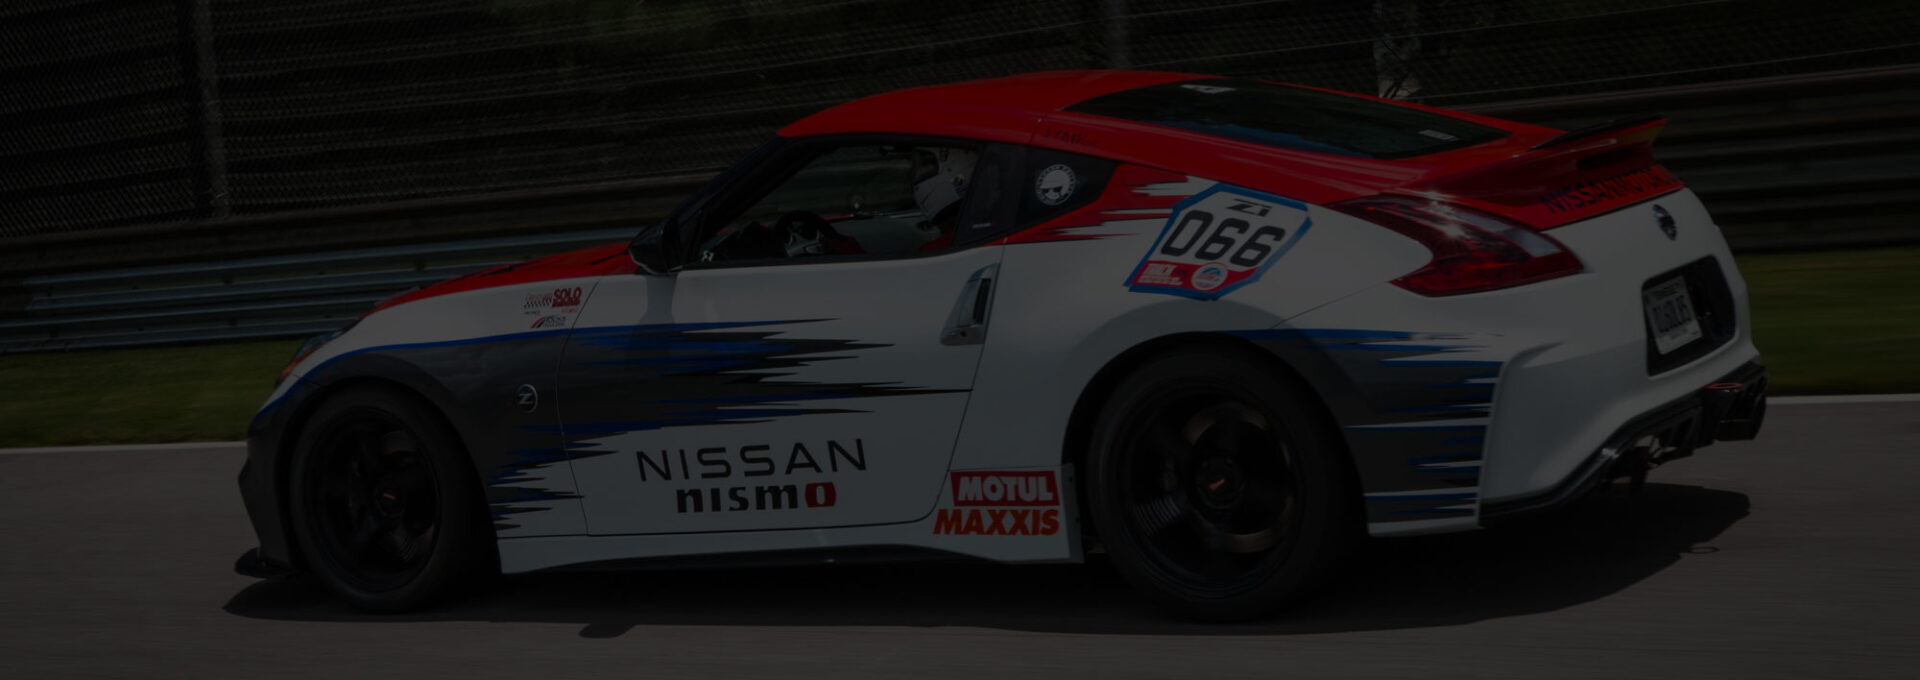 Nissan car racing